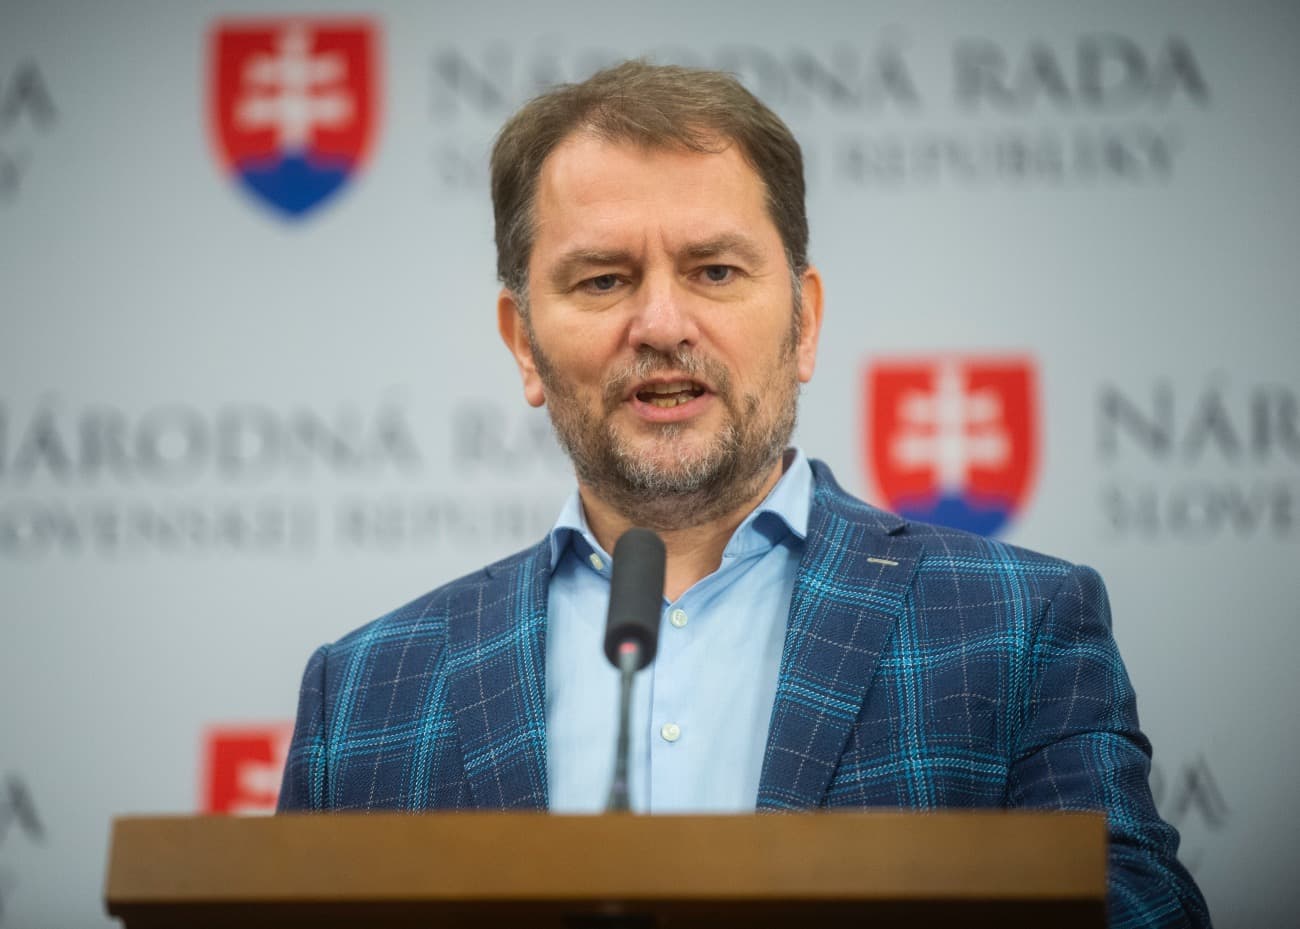 Matovič radikális változást vezetne be a parlamentben, aminek sok képviselő bizonyára nem örülne